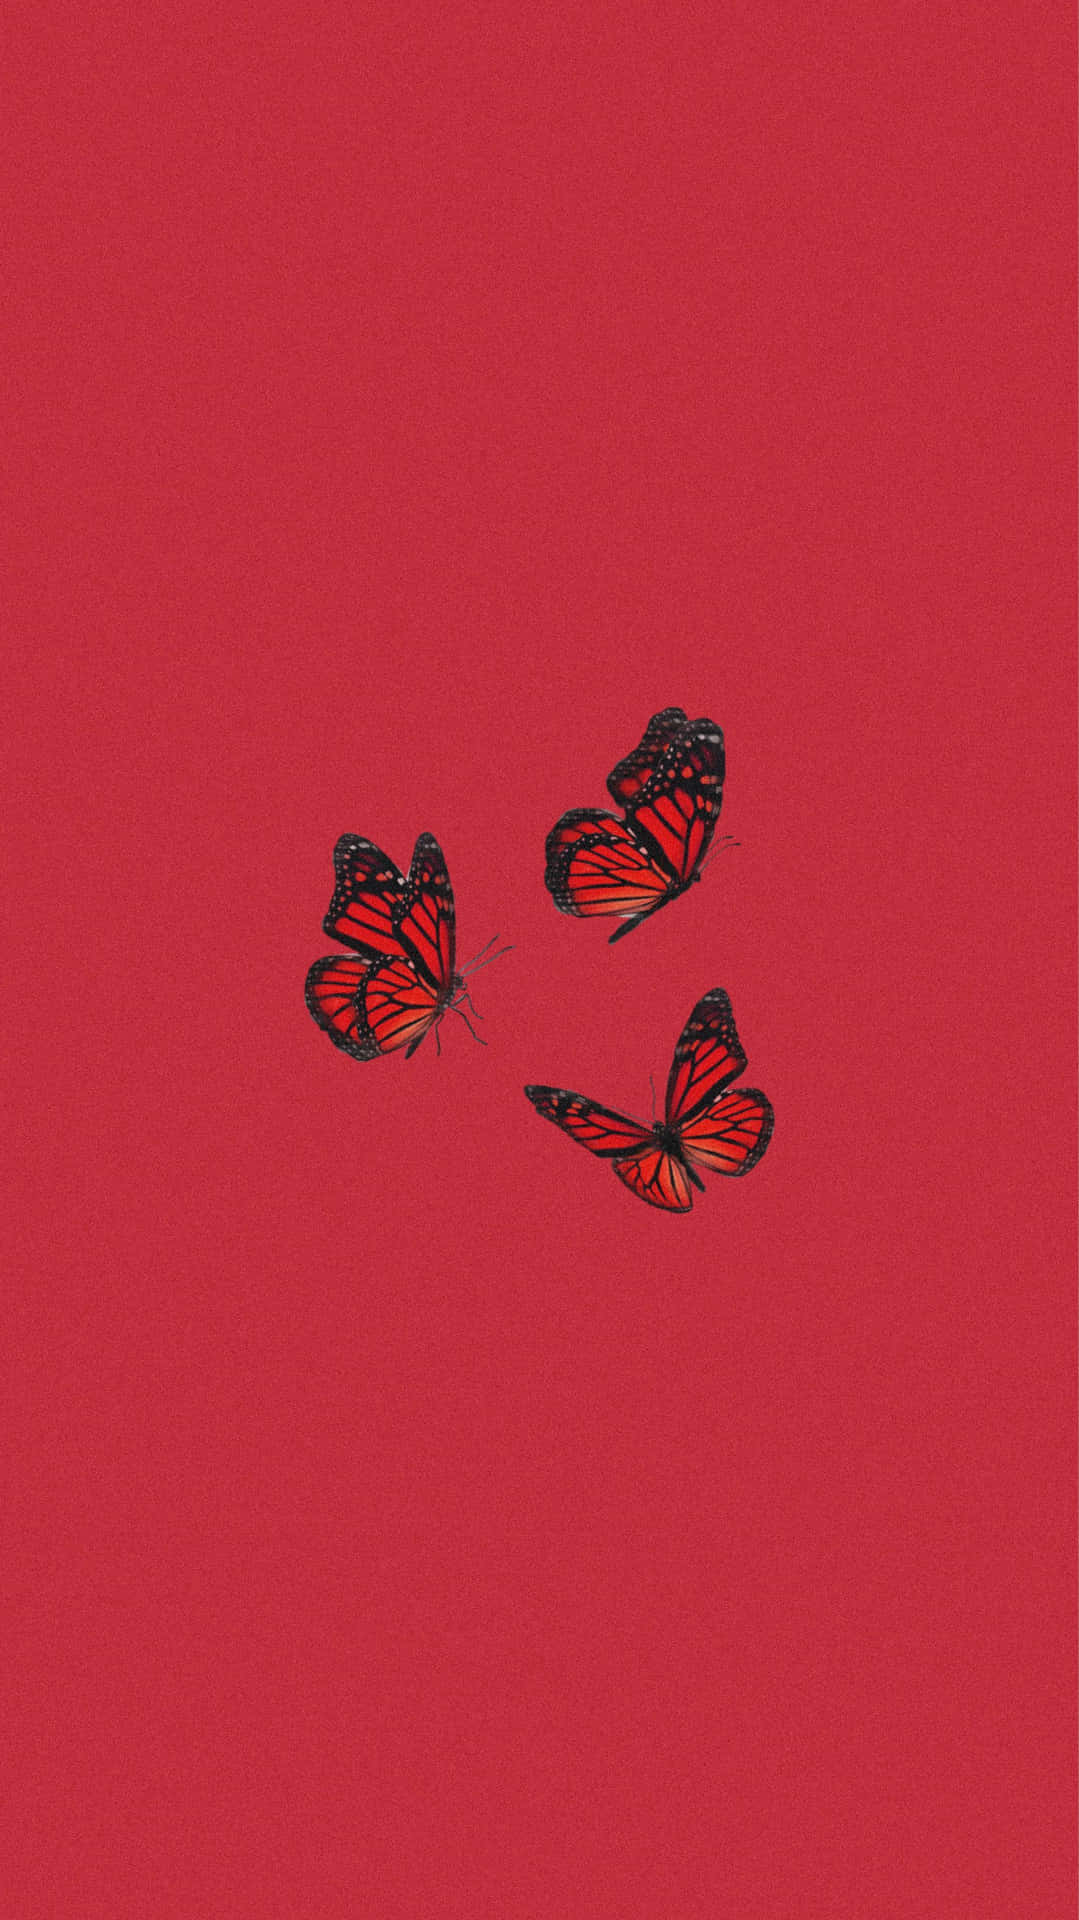 = Vinger af en rød sommerfugl spredes ud i et smukt mønster Wallpaper